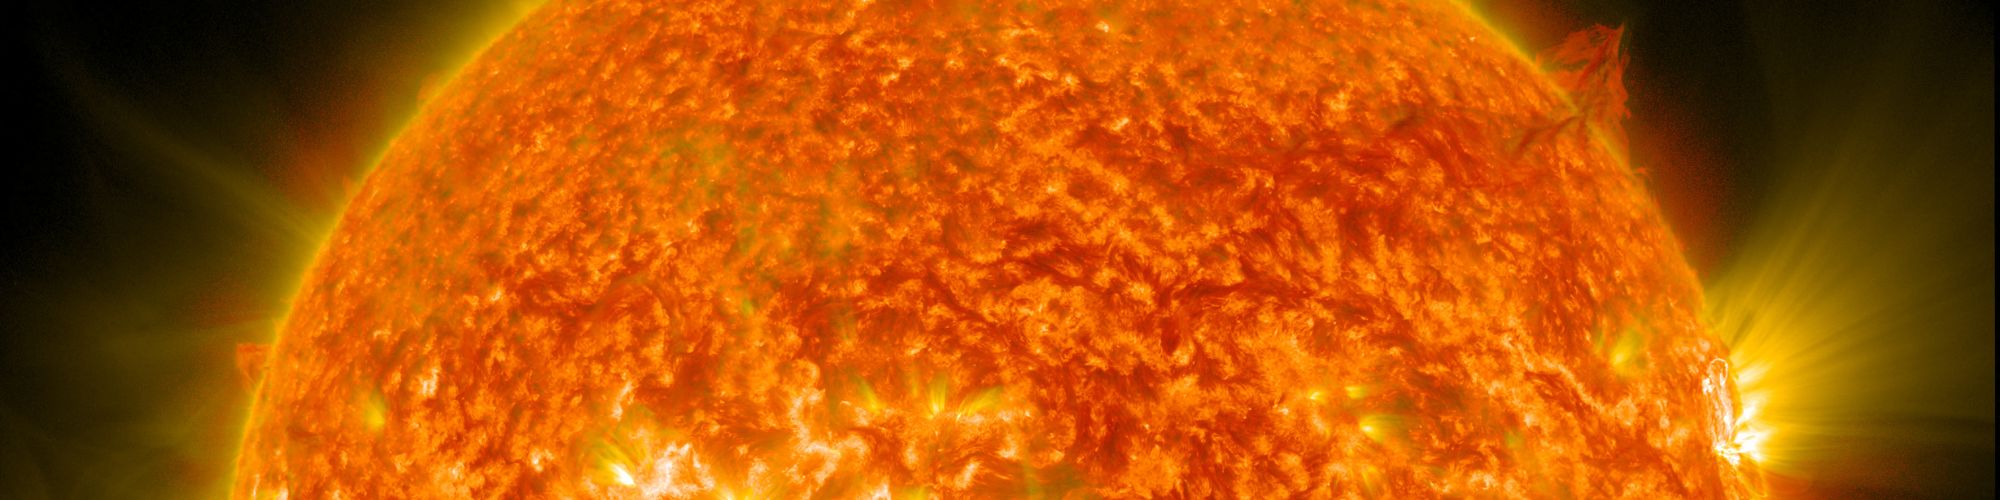 10 11 магнитные бури. Поверхность солнца. Вспышки на солнце. Солнце из космоса. Солнце фото НАСА.